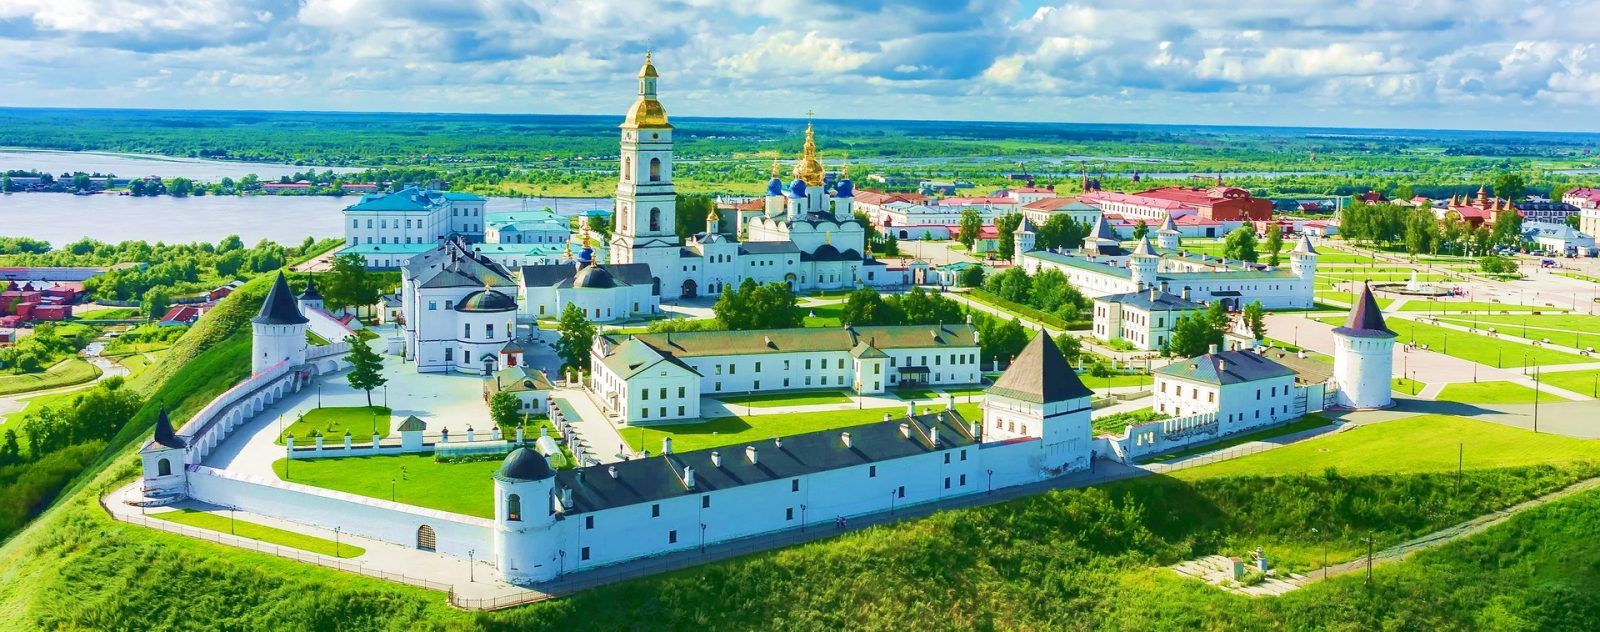 Тобольск — имперская столица Сибири. Панорама Тобольского кремля